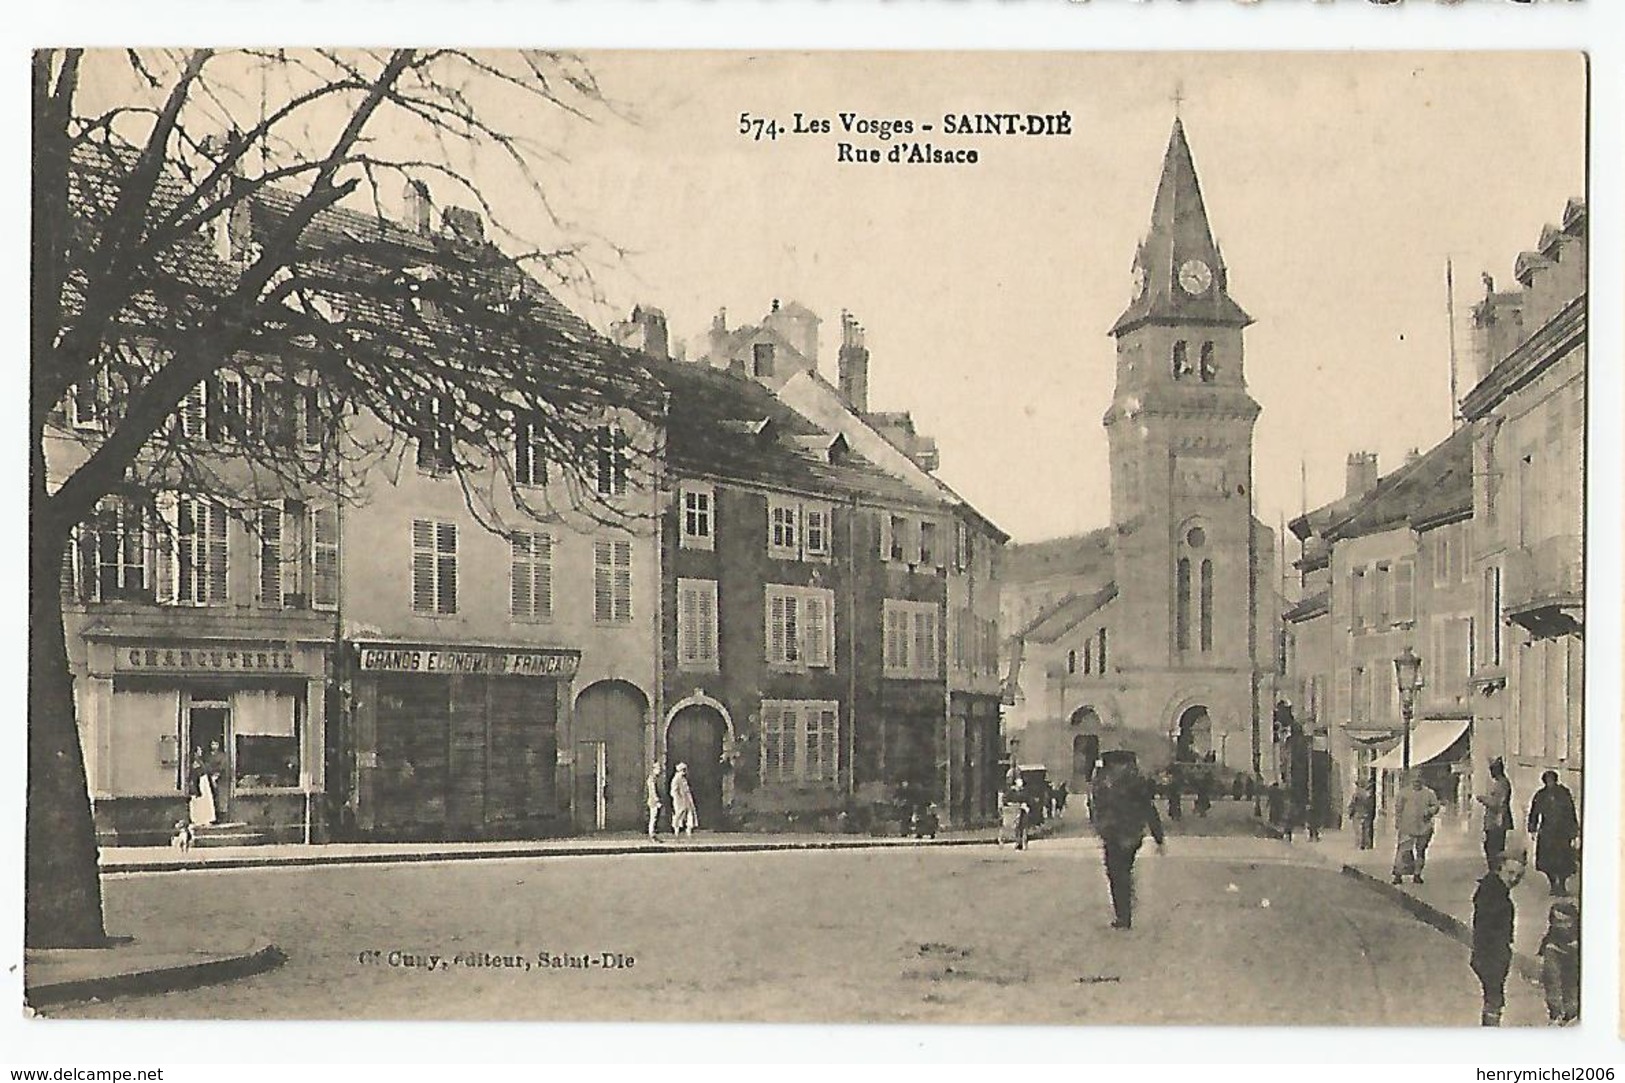 88 Vosges St Dié Rue D'alsace Charcuterie Grands économats Français Ed Cuny N 574 - Saint Die